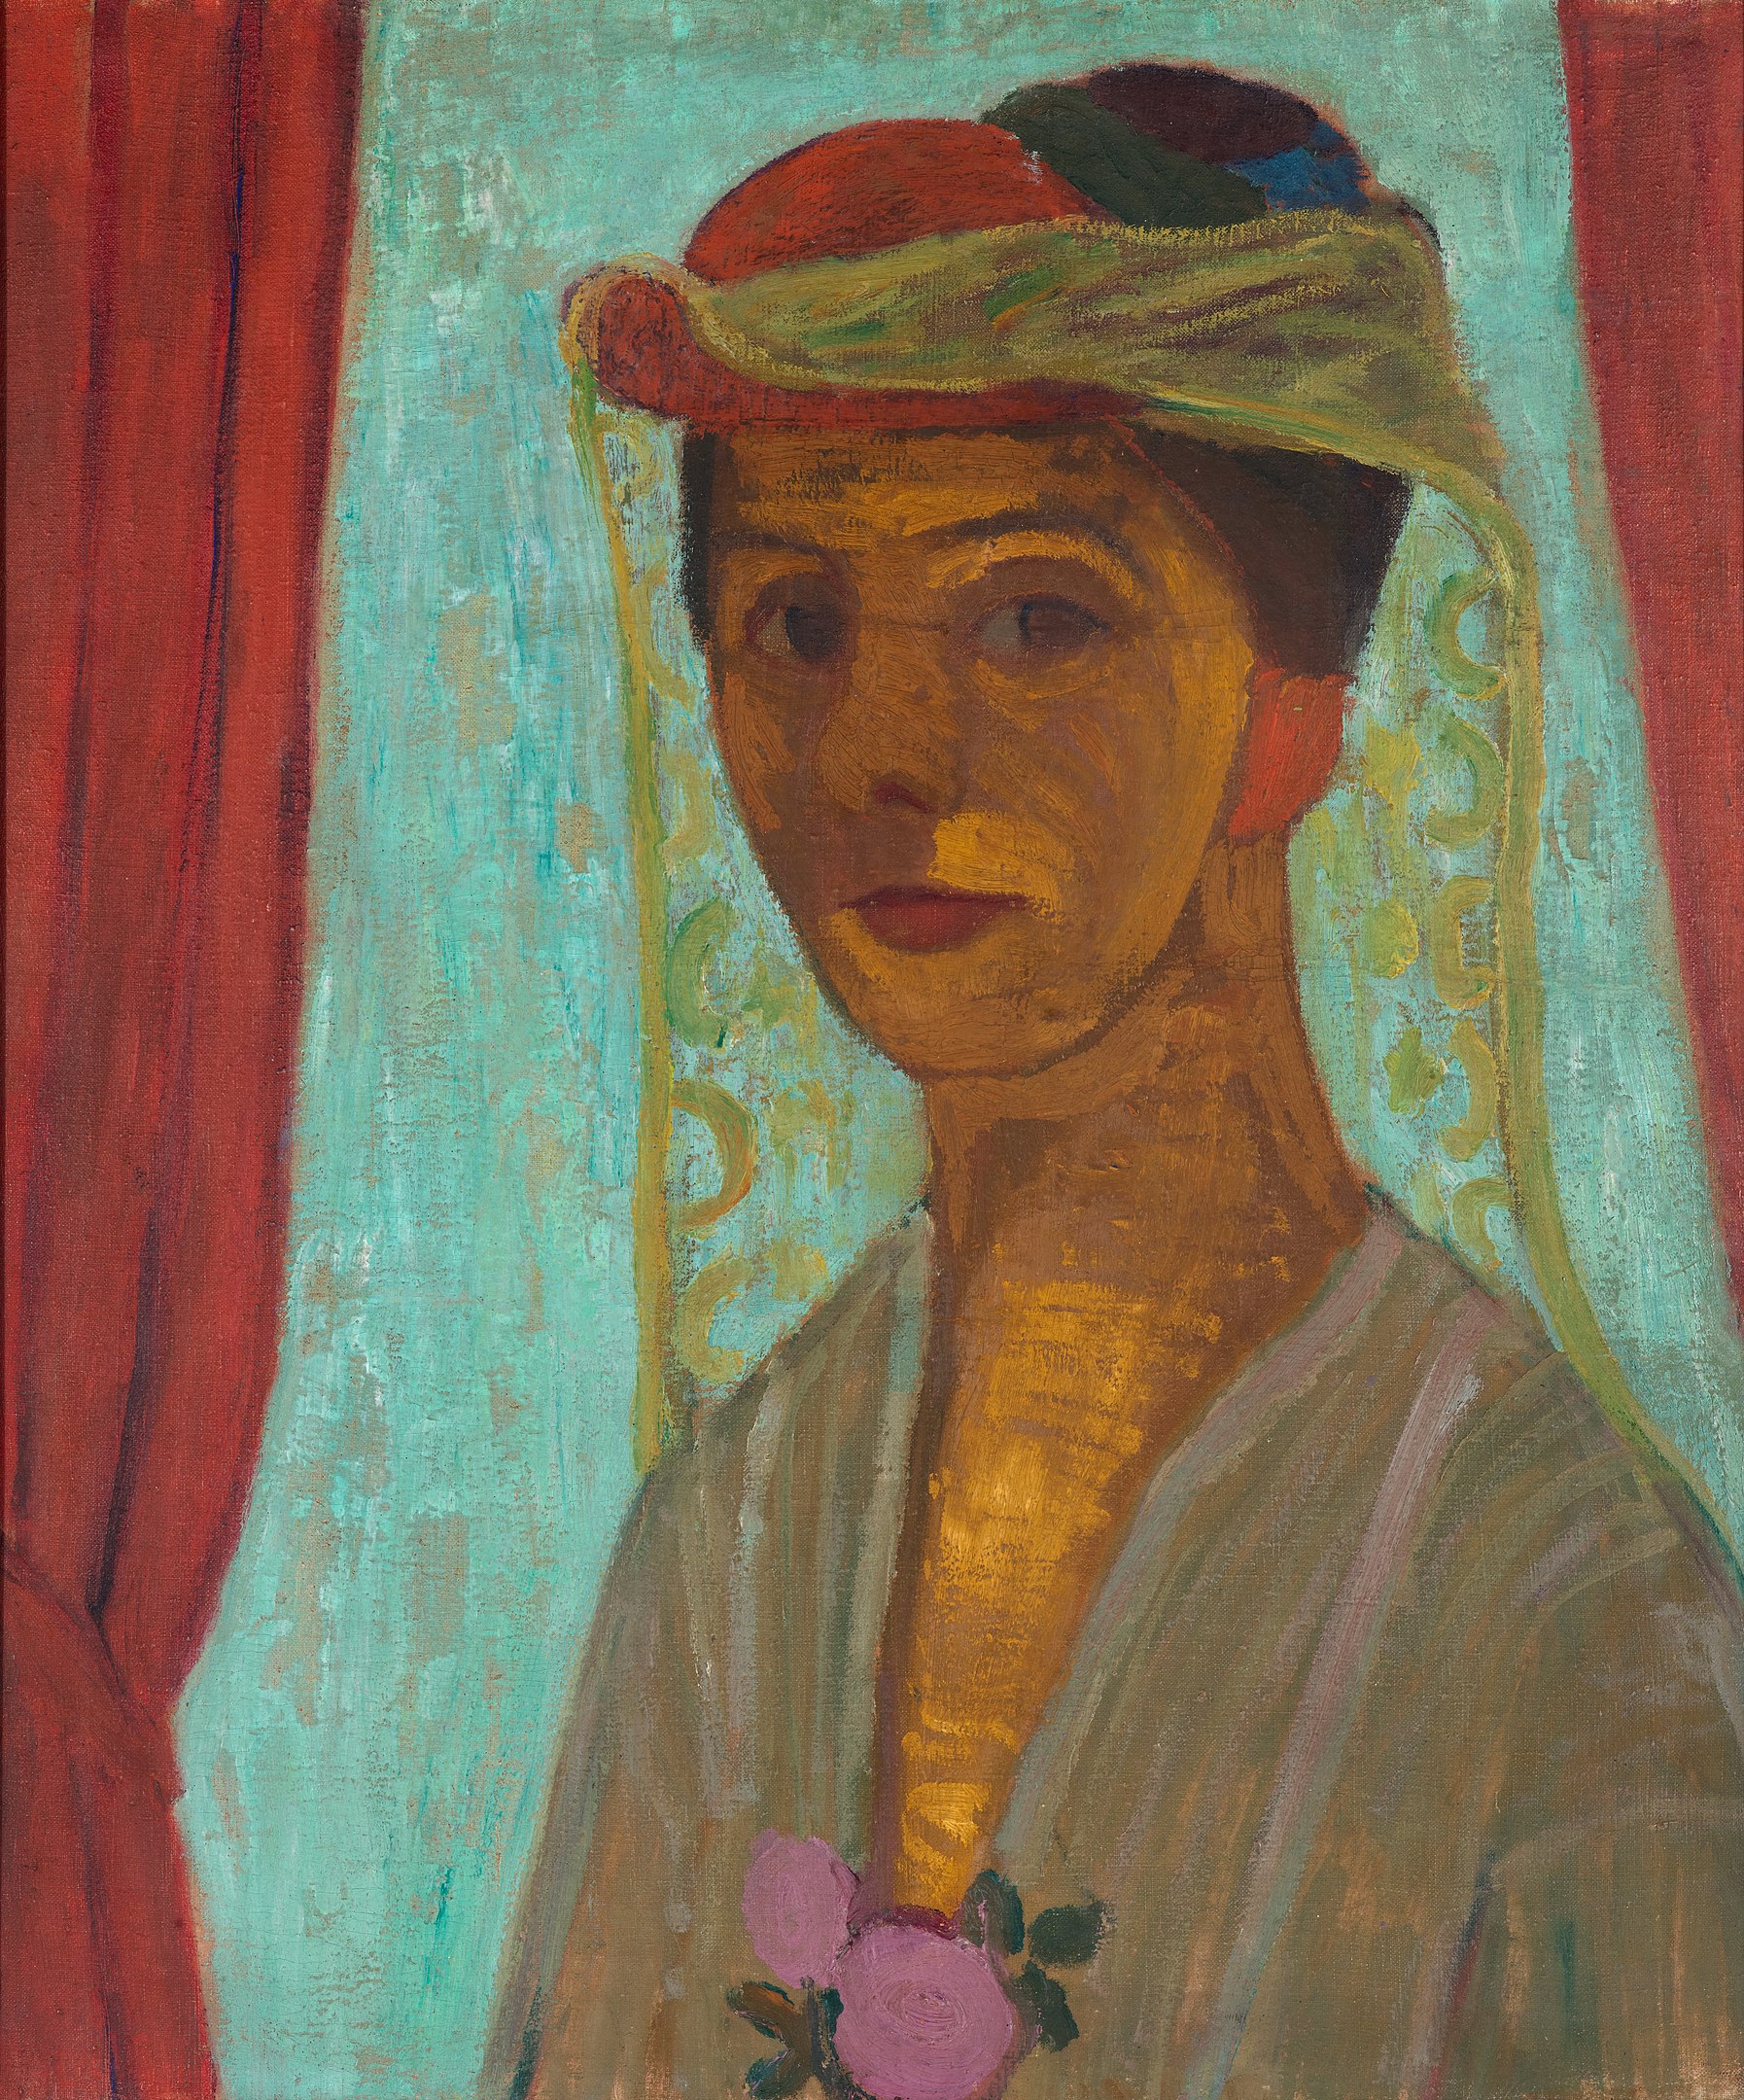 Autorretrato com chapéu e véu by Paula Modersohn-Becker - 1906/1907 - 79,8 x 89,6 cm 